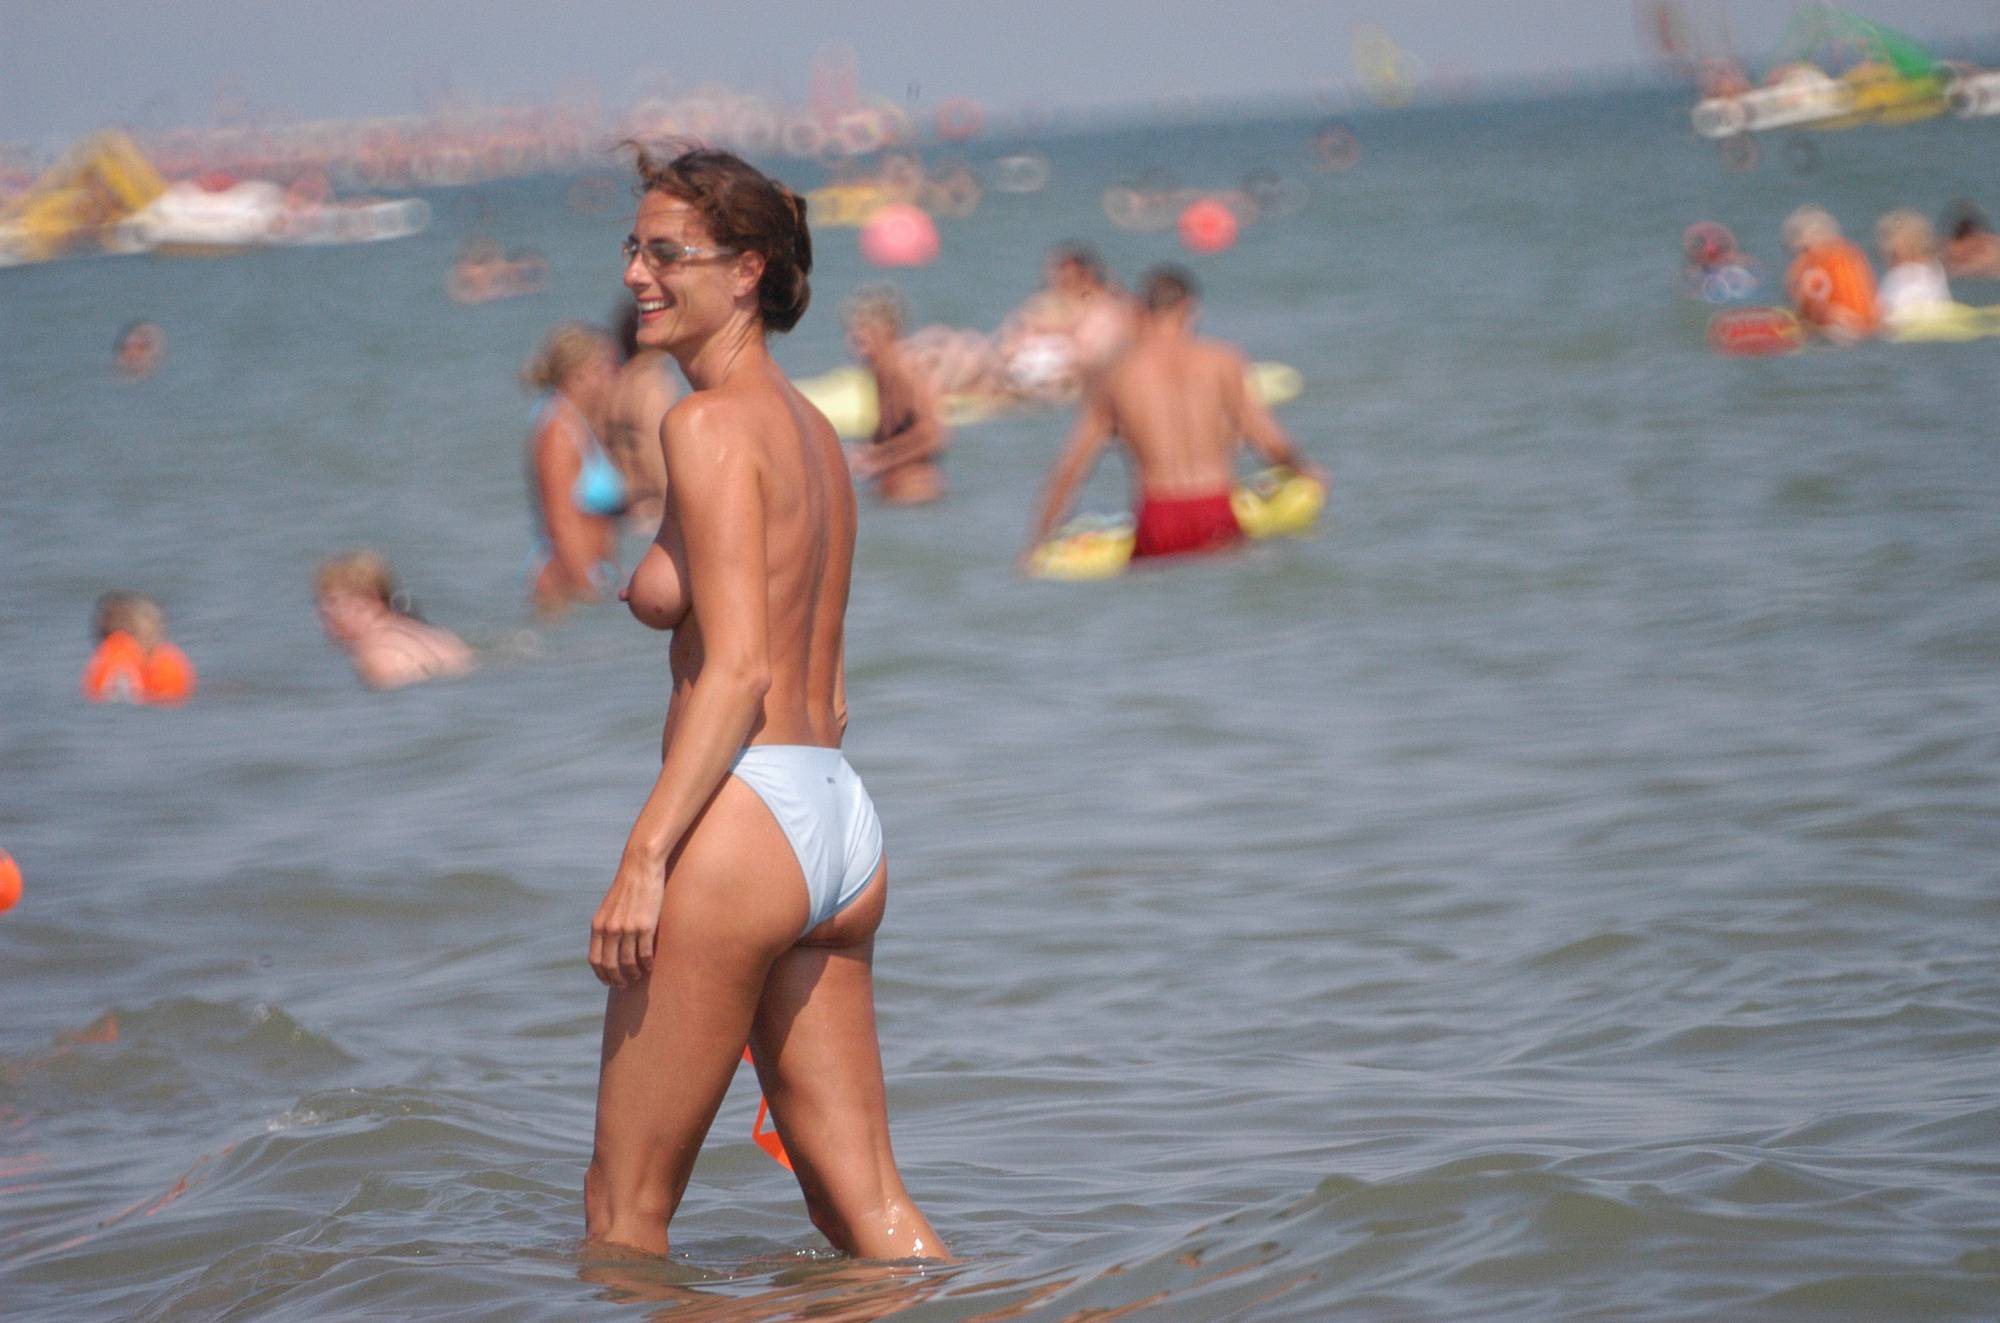 Pure Nudism Pics Italian Beach Water Fun - 1